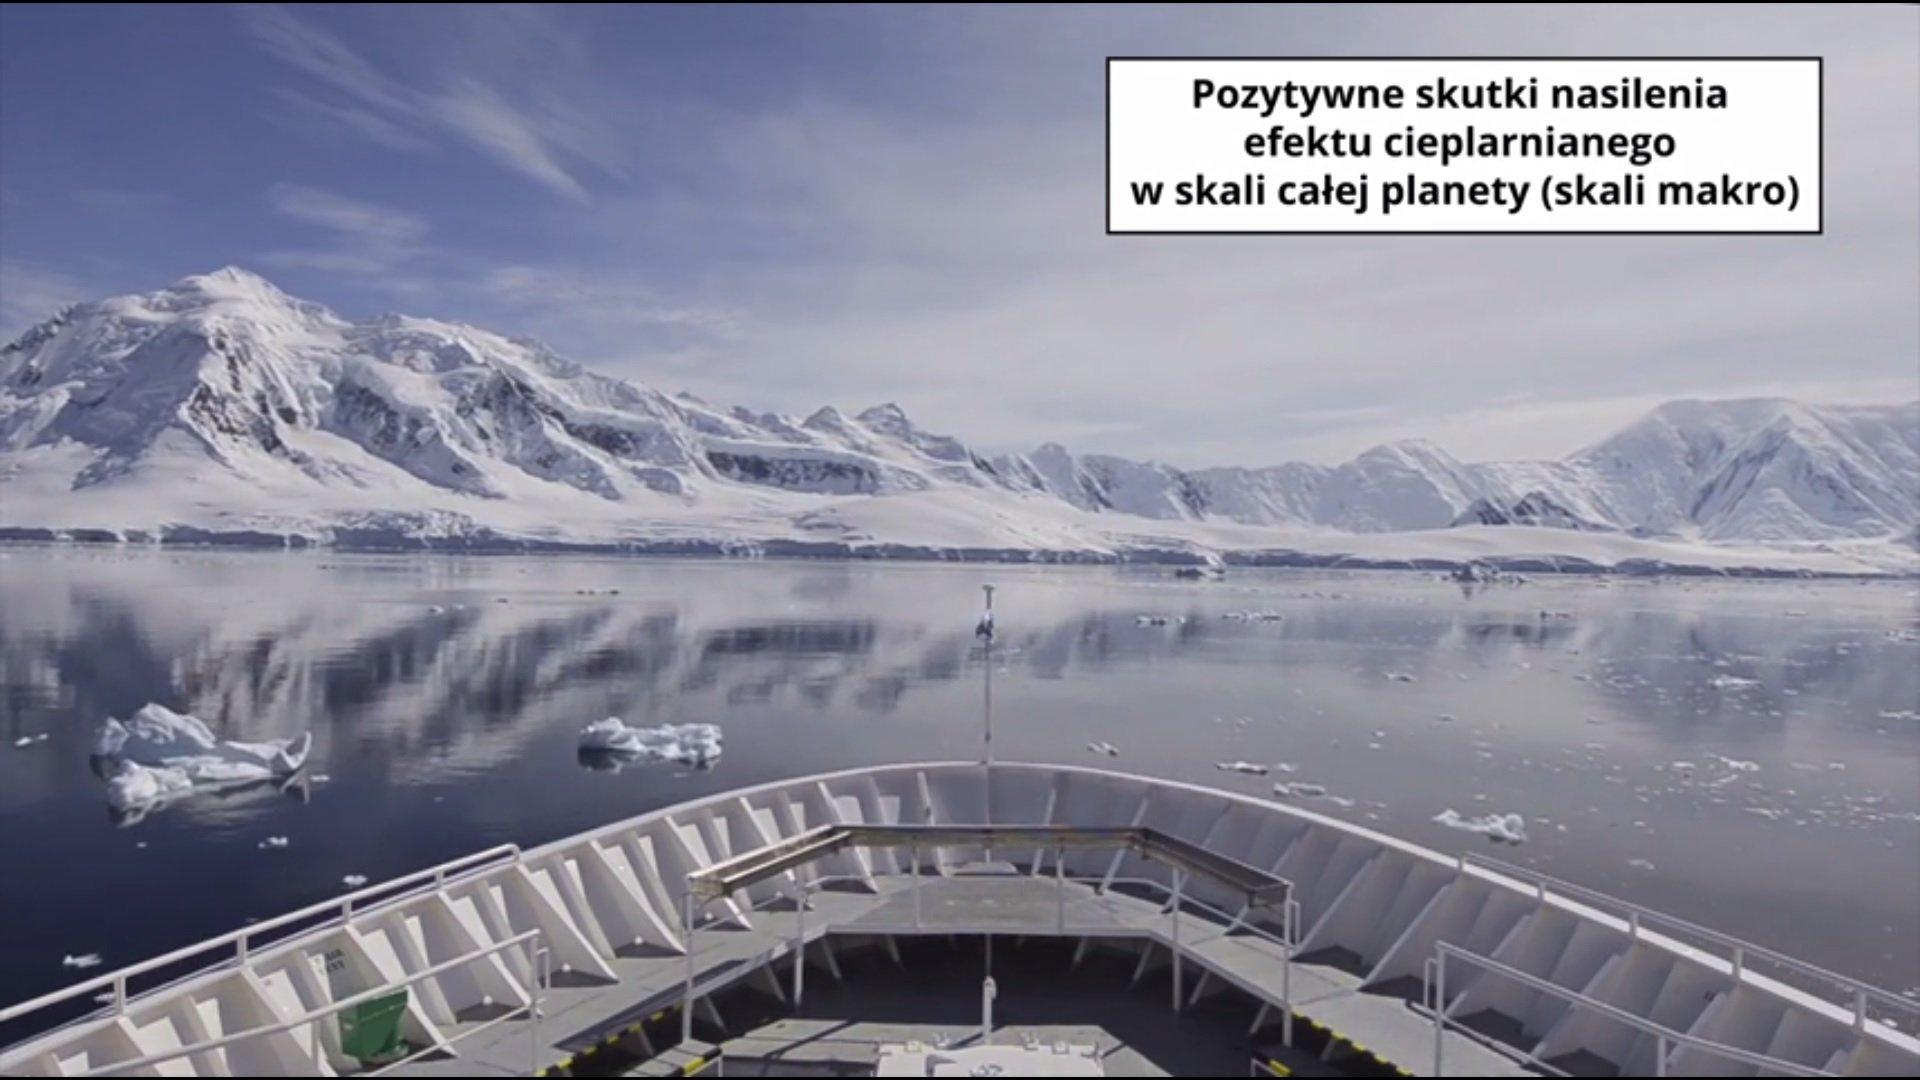 Kadr z filmu edukacyjnego MEN przedstawiające pozytywne skutki zmiany klimatu